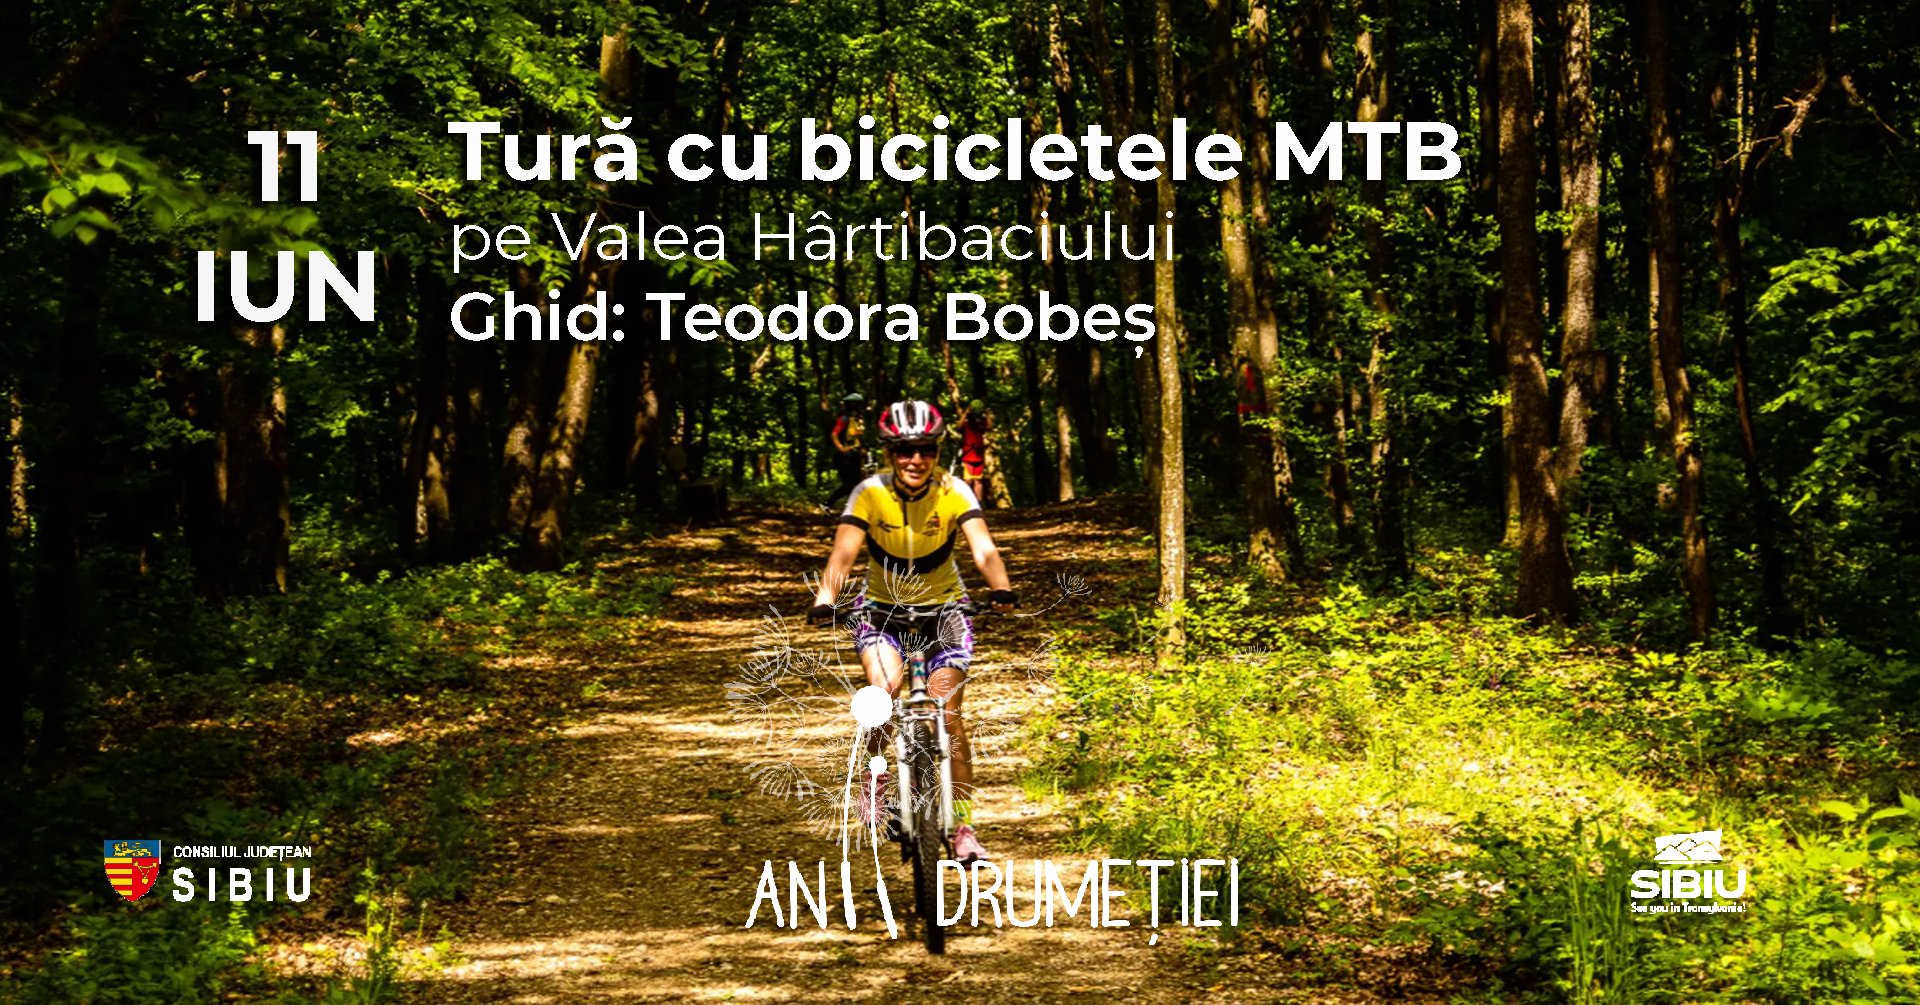 Tură cu bicicletele MTB: Valea Hârtibaciului